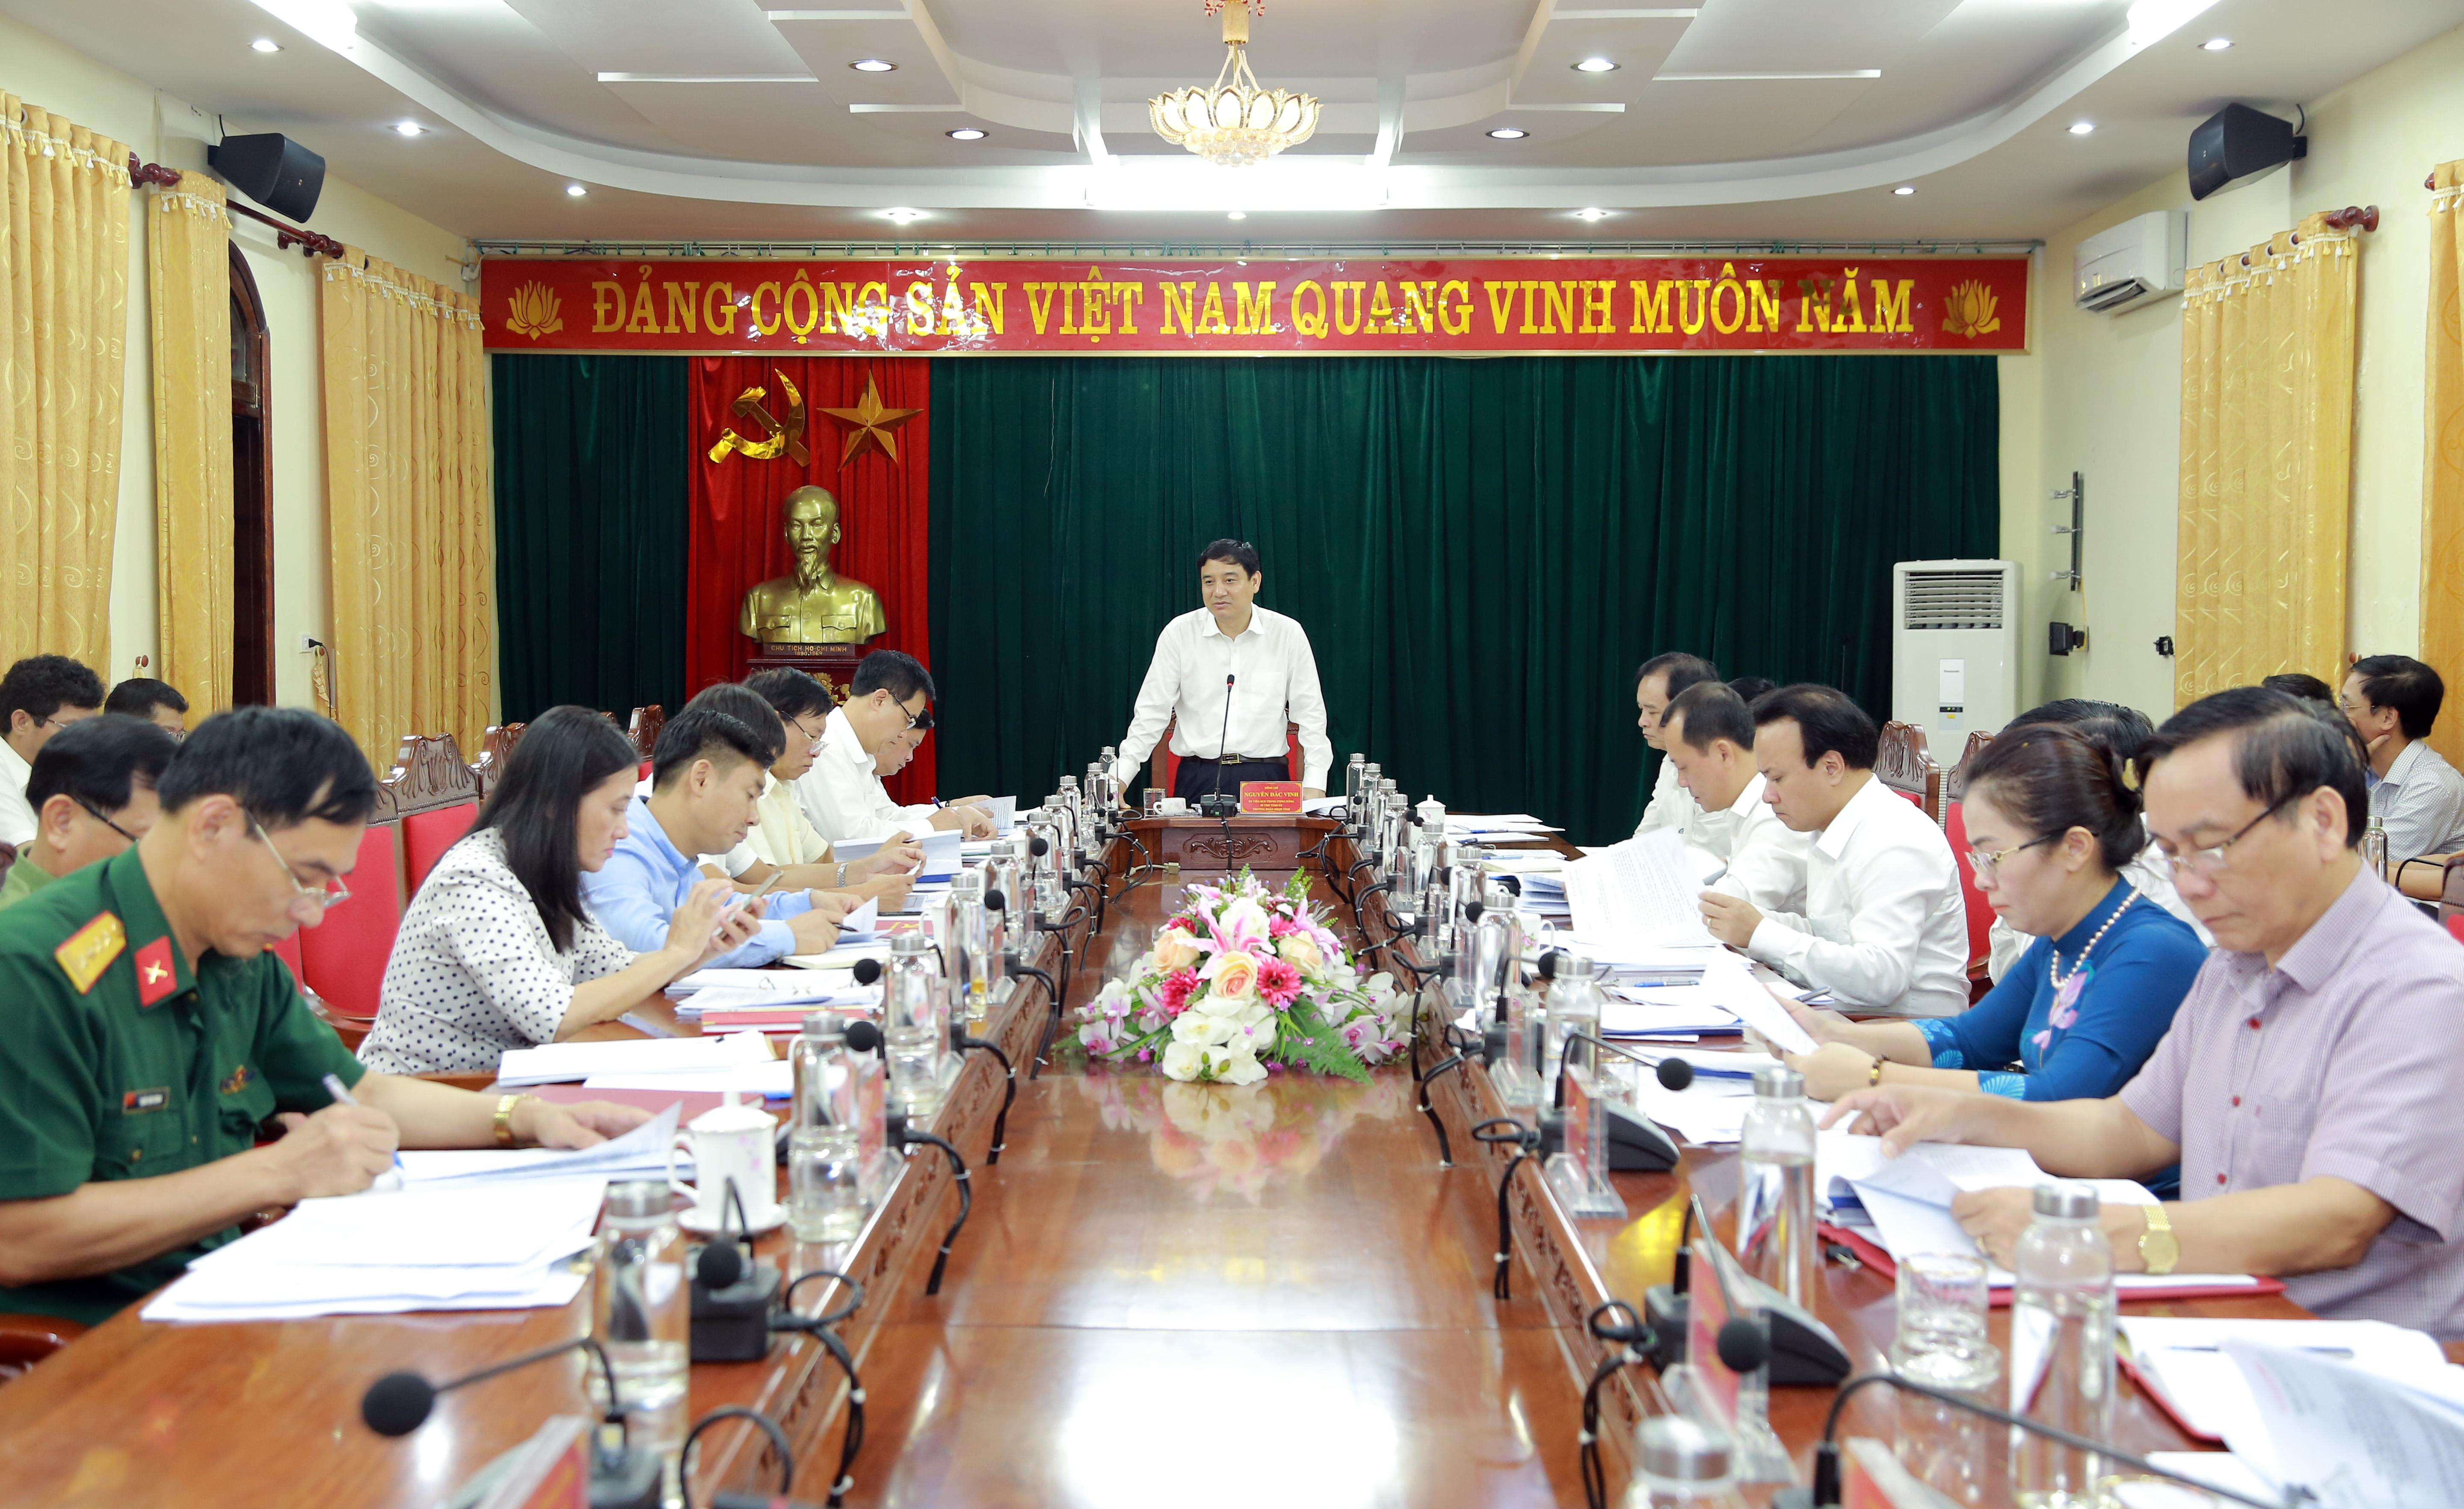 Dự phiên họp có các đồng chí: Thái Thanh Quý - Ủy viên dự khuyết Trung ương Đảng, Phó Bí thư Tỉnh ủy, Chủ tịch UBND tỉnh